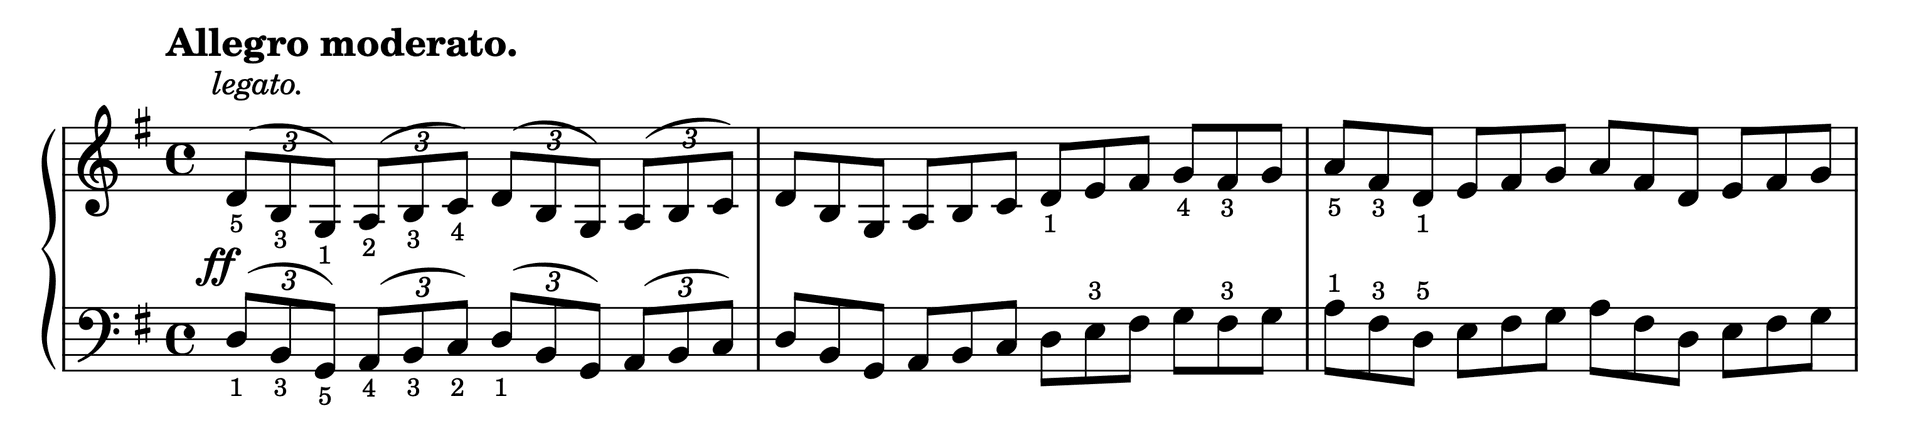 Excerpt of Etude in G Major Op. 37, No. 8